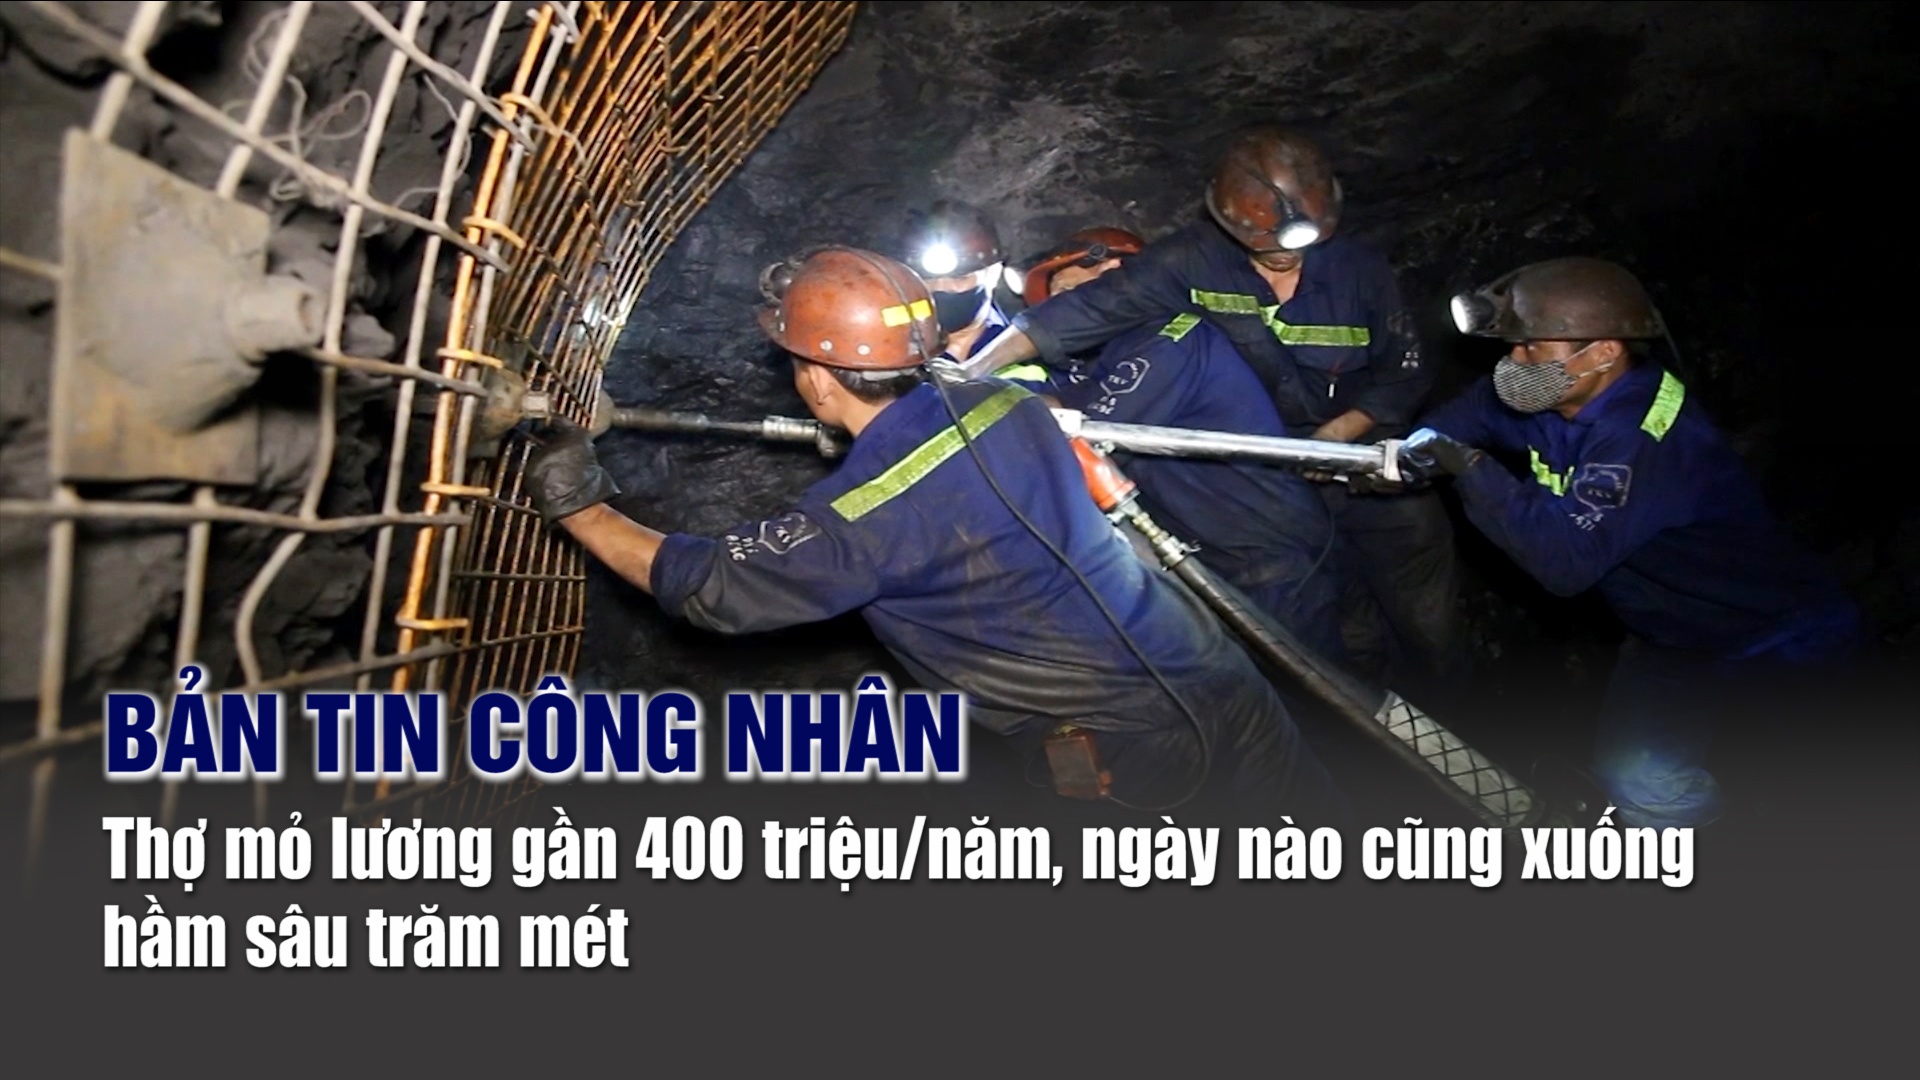 Bản tin công nhân: Thợ mỏ lương gần 400 triệu đồng/năm: Ngày nào cũng xuống hầm sâu trăm mét